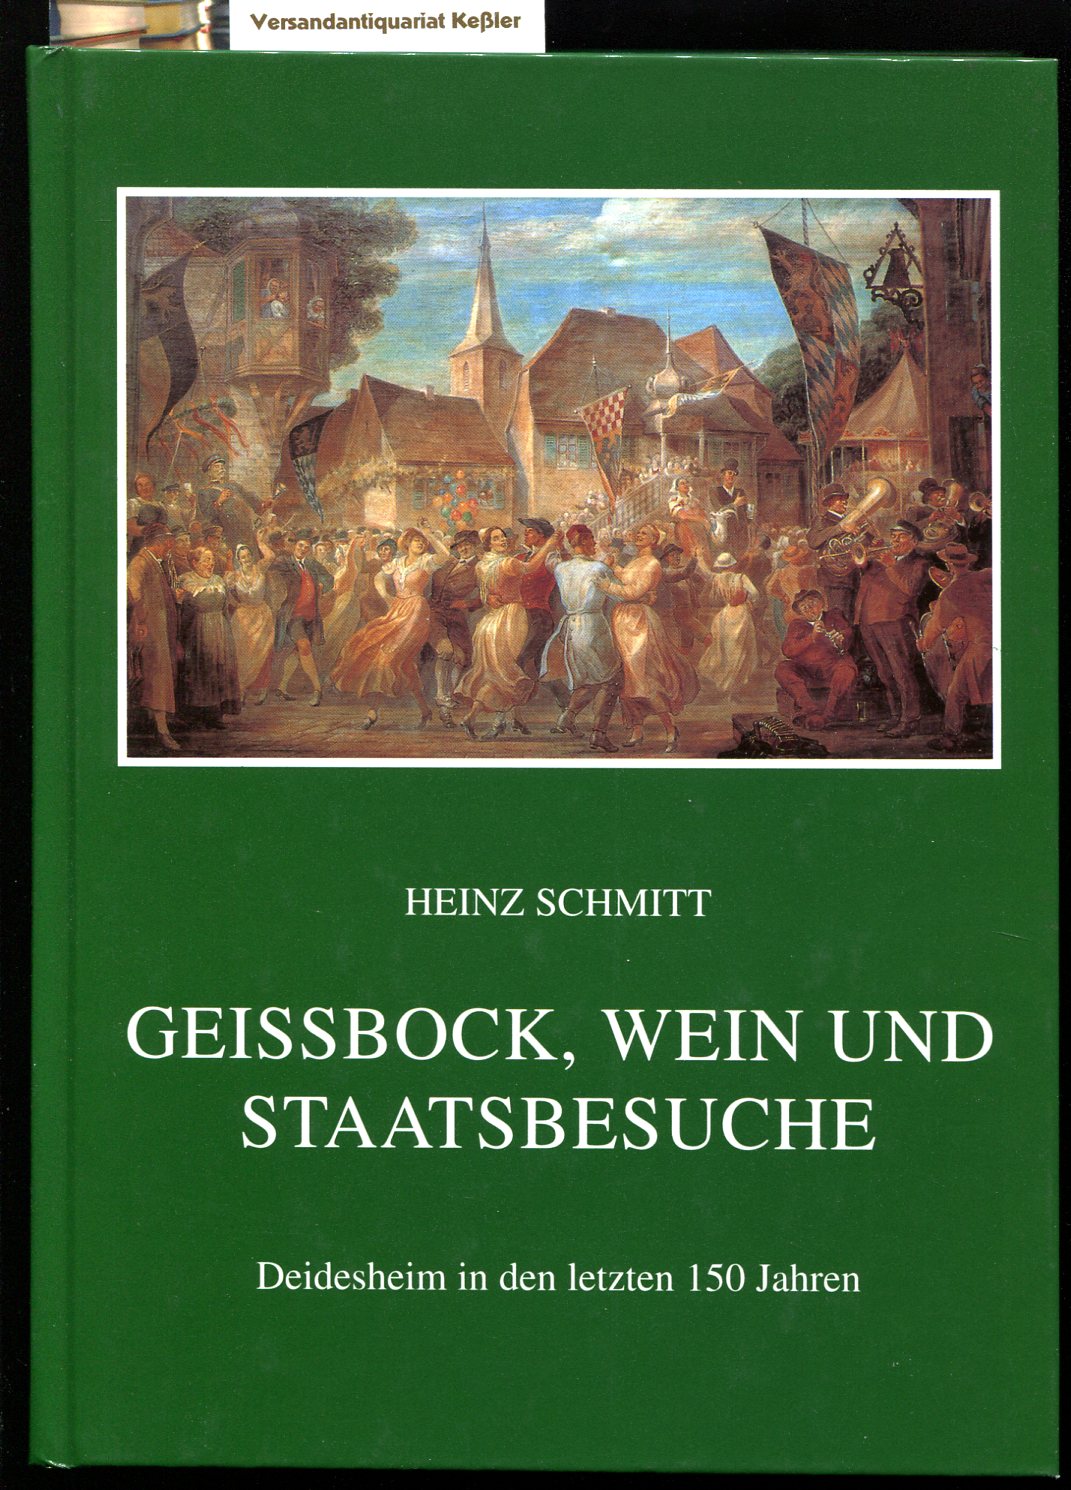 Geissbock, Wein und Staatsbesuche : Deidesheim in den letzten 150 Jahren - Schmitt, Heinz